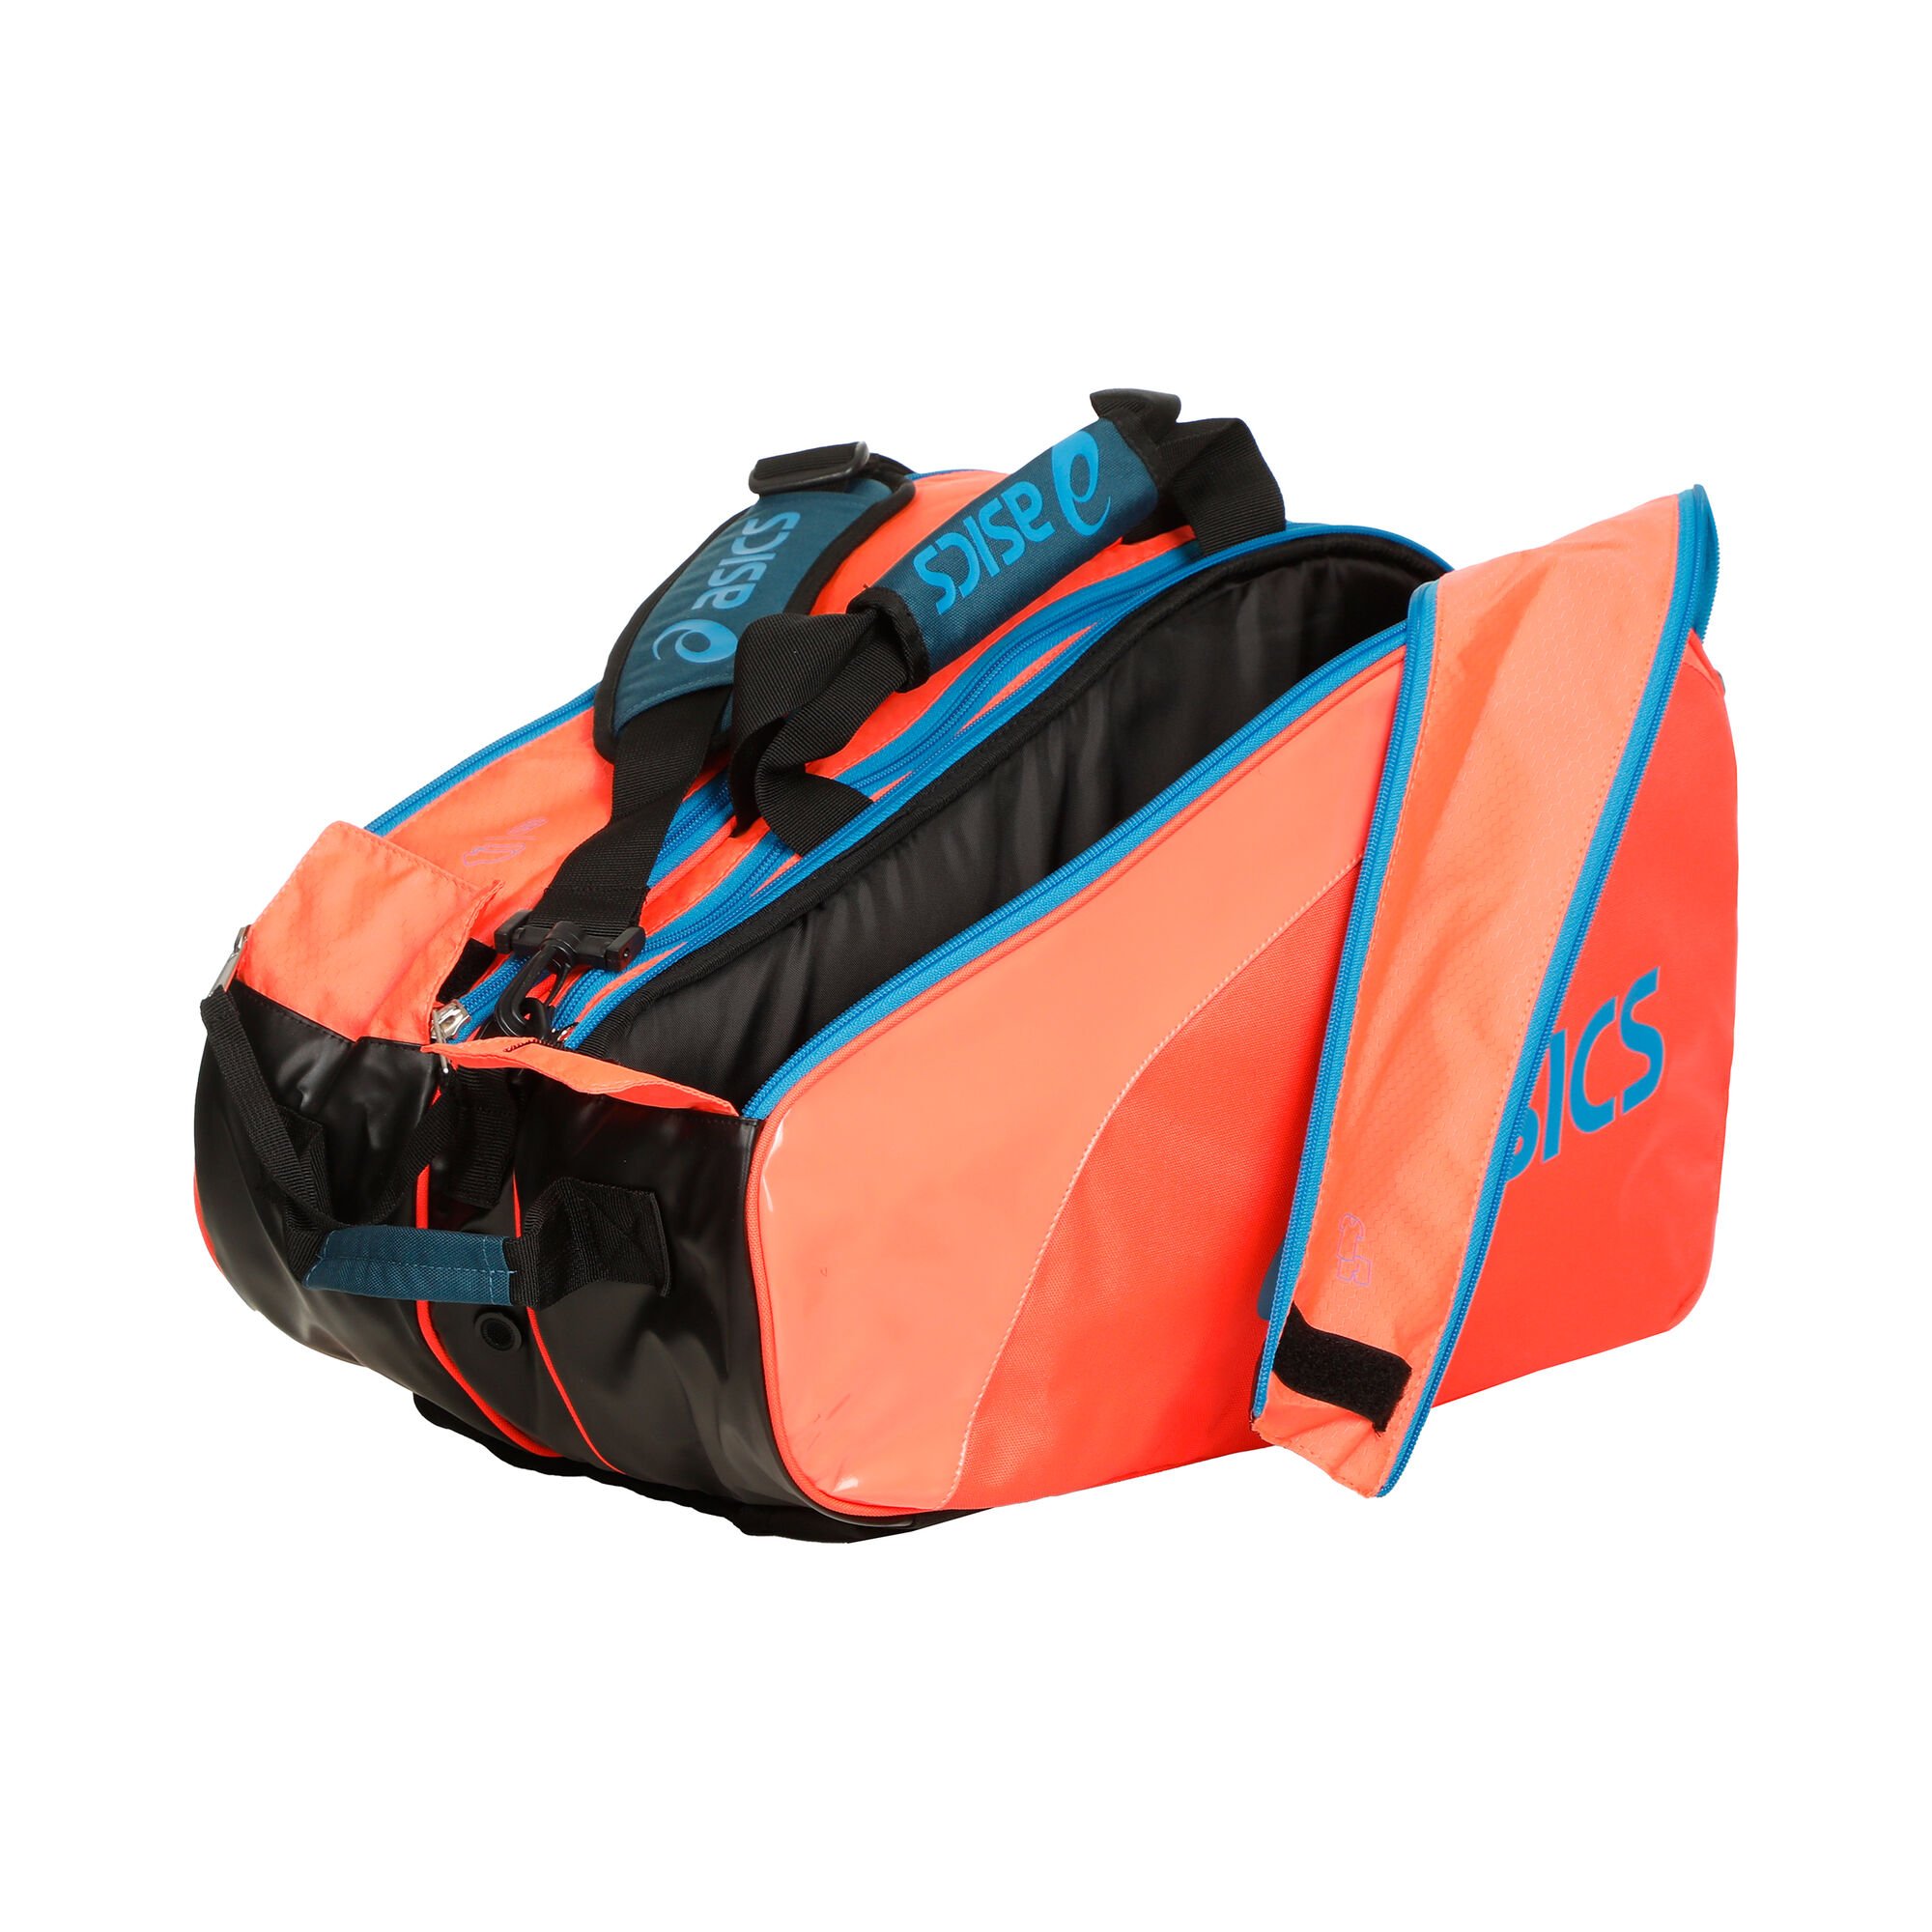 Bag Paletero - Naranja, Turquesa compra online | Tennis-Point